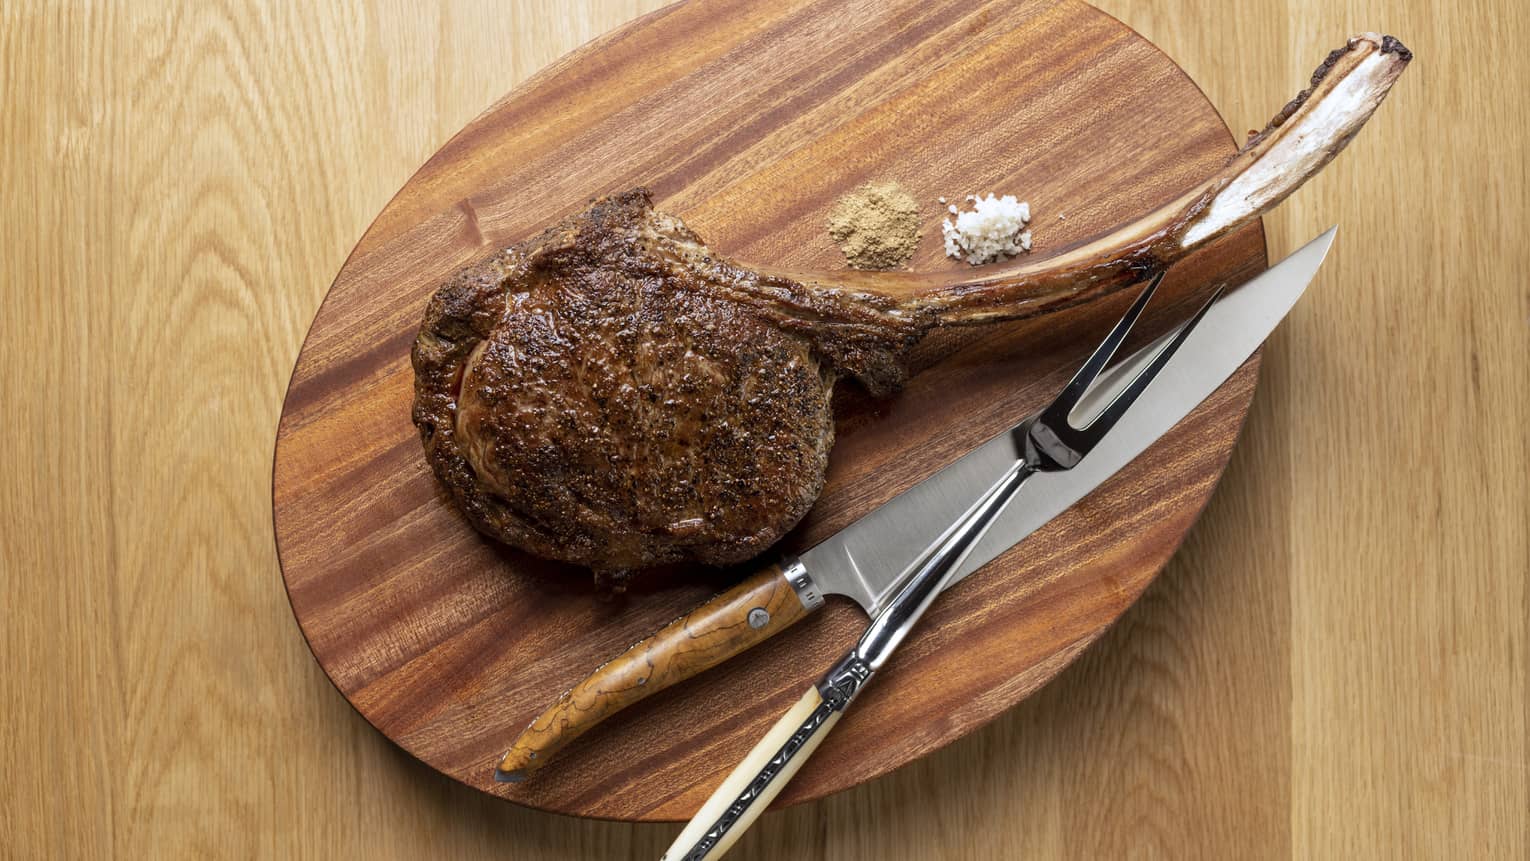 Tomahawk steak on wooden oval carving board